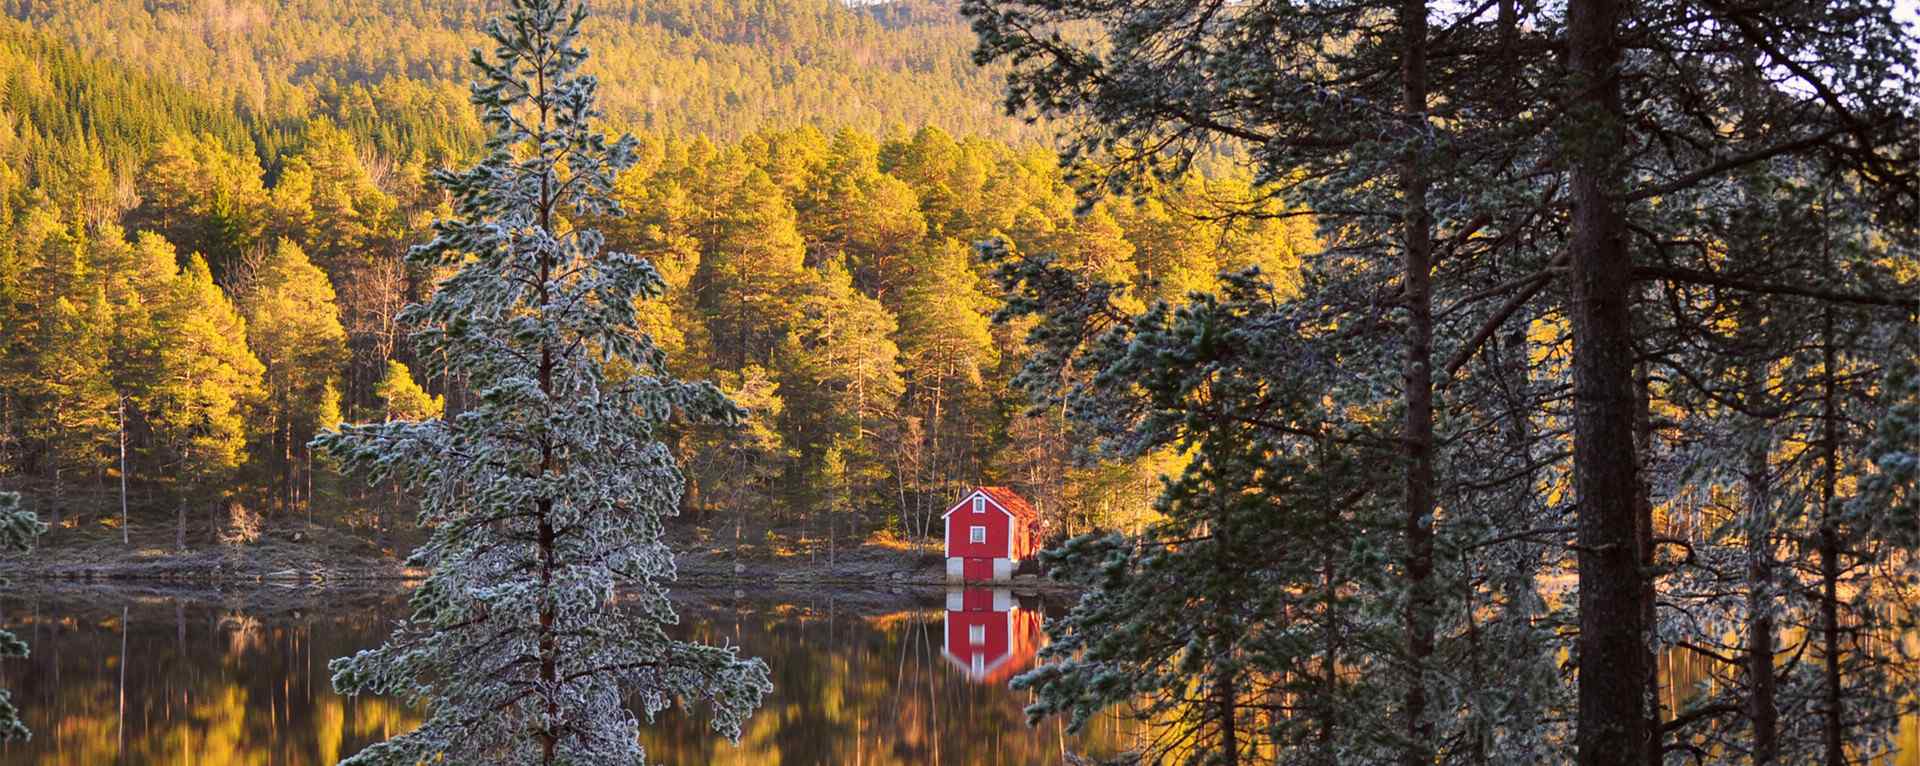 北欧国家挪威_挪威峡湾风景_挪威极光_挪威的森林桌面壁纸